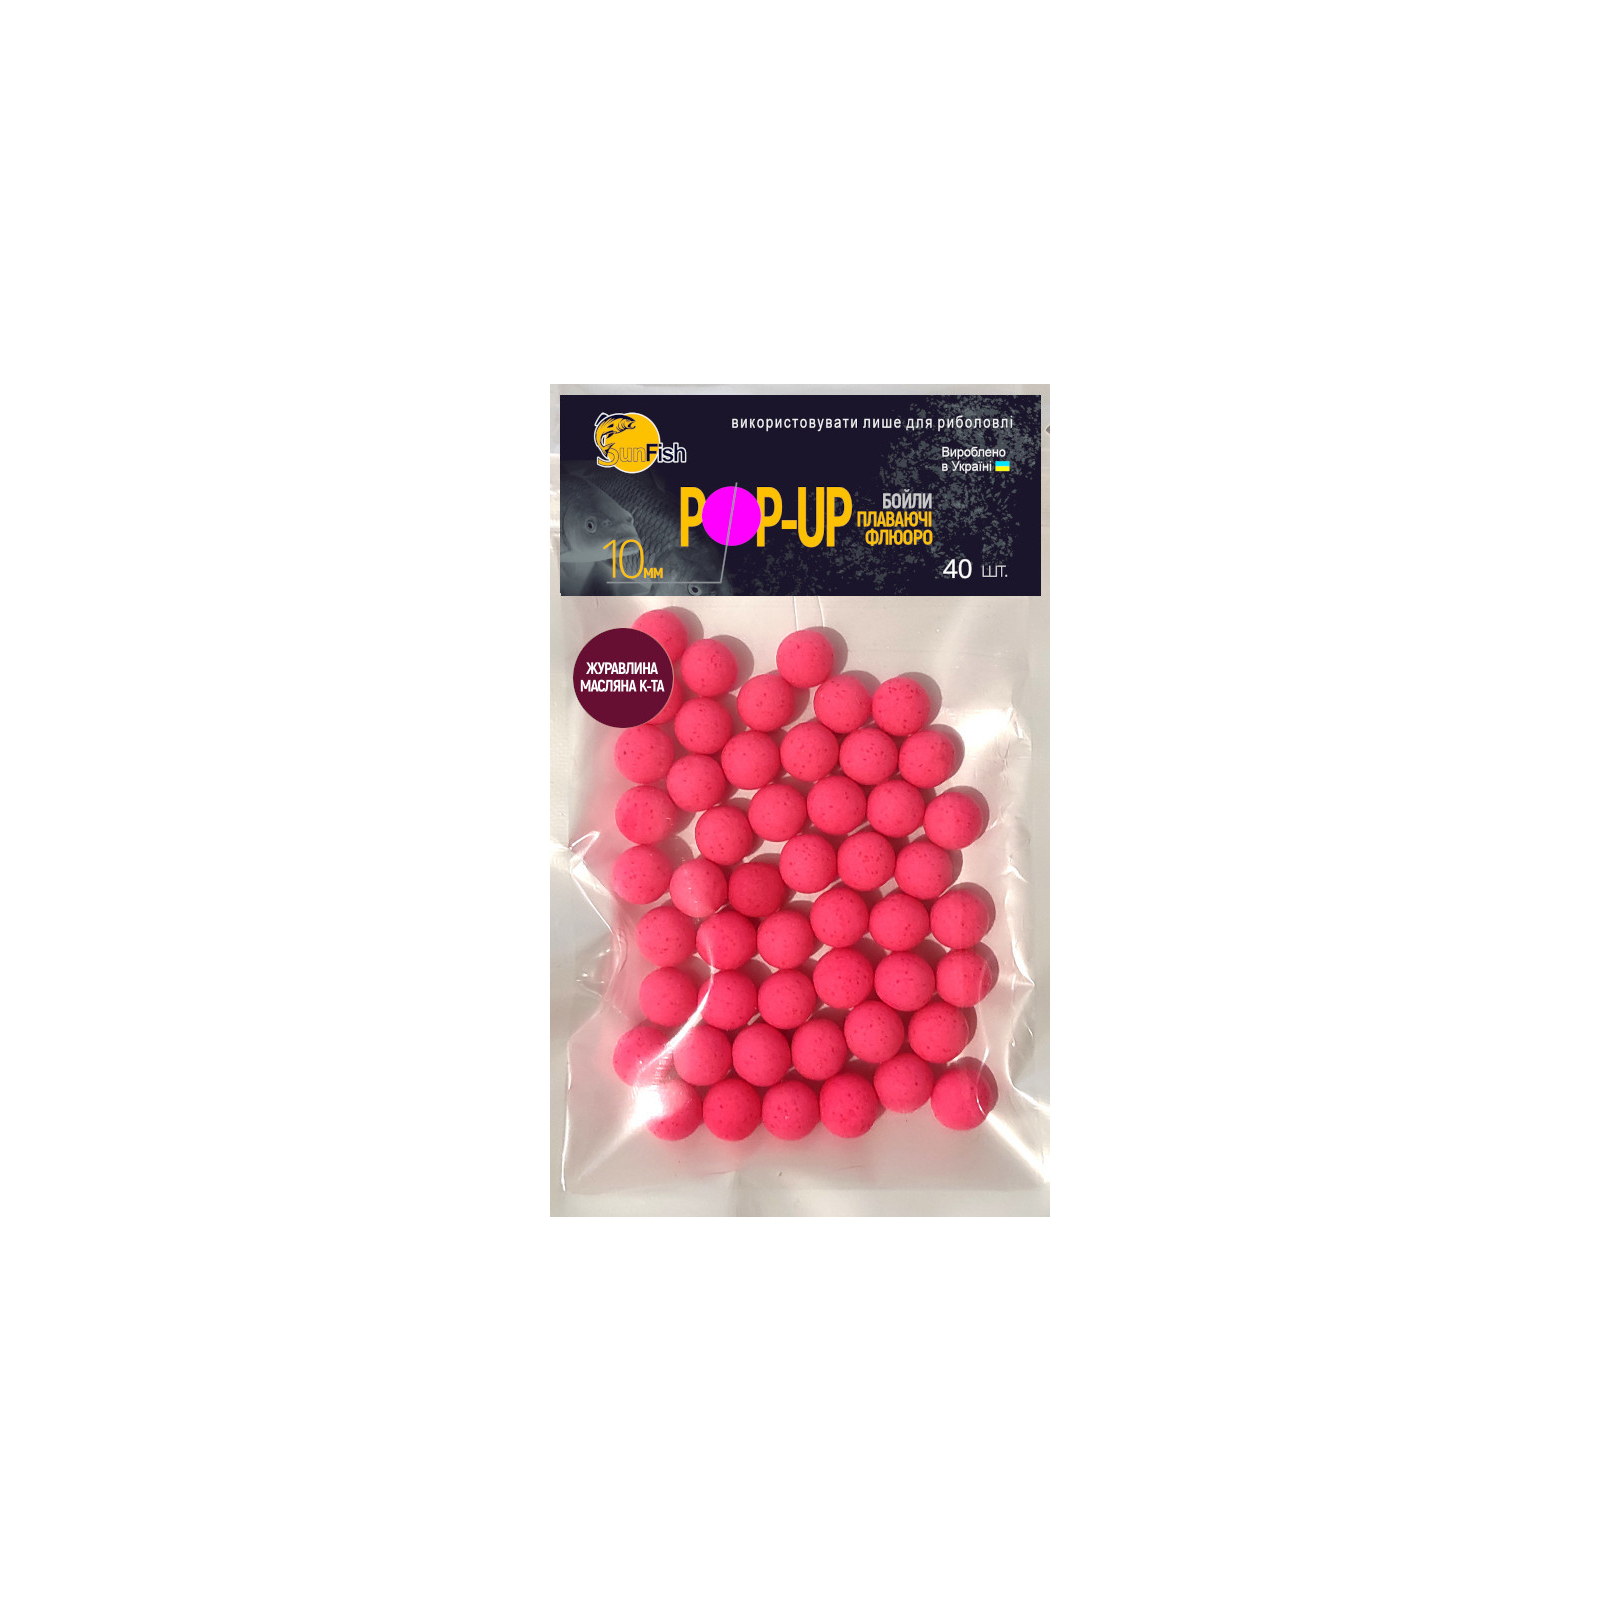 Бойл SunFish Pop-Up Журавлина Масляна Кислота 10 mm 40 шт (SF220832)